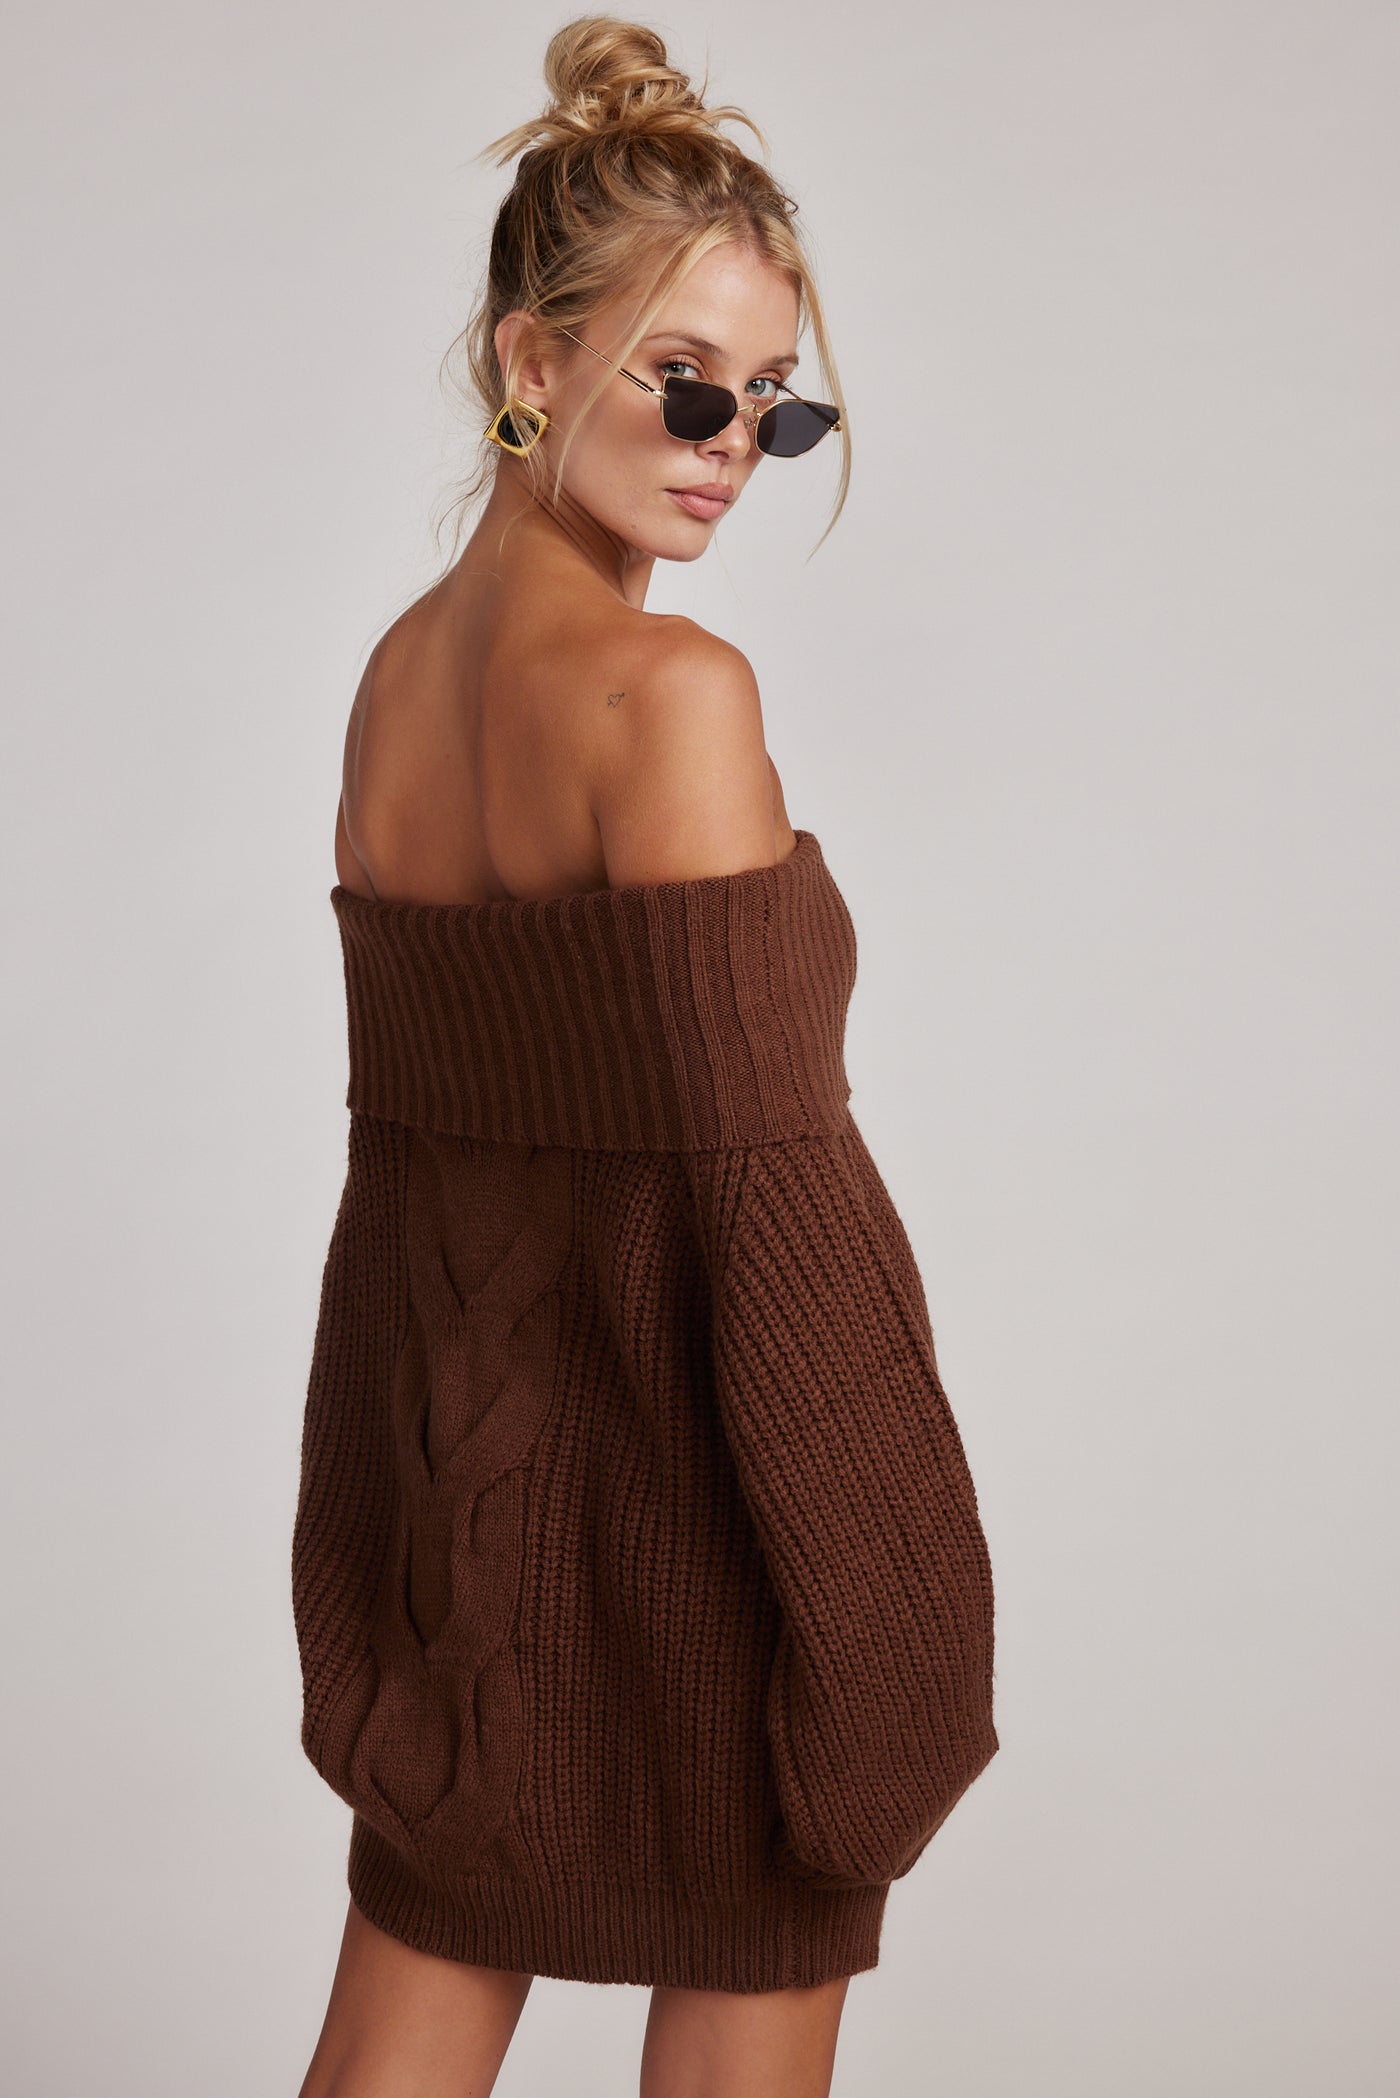 Rhetta Brown Knit Sweater